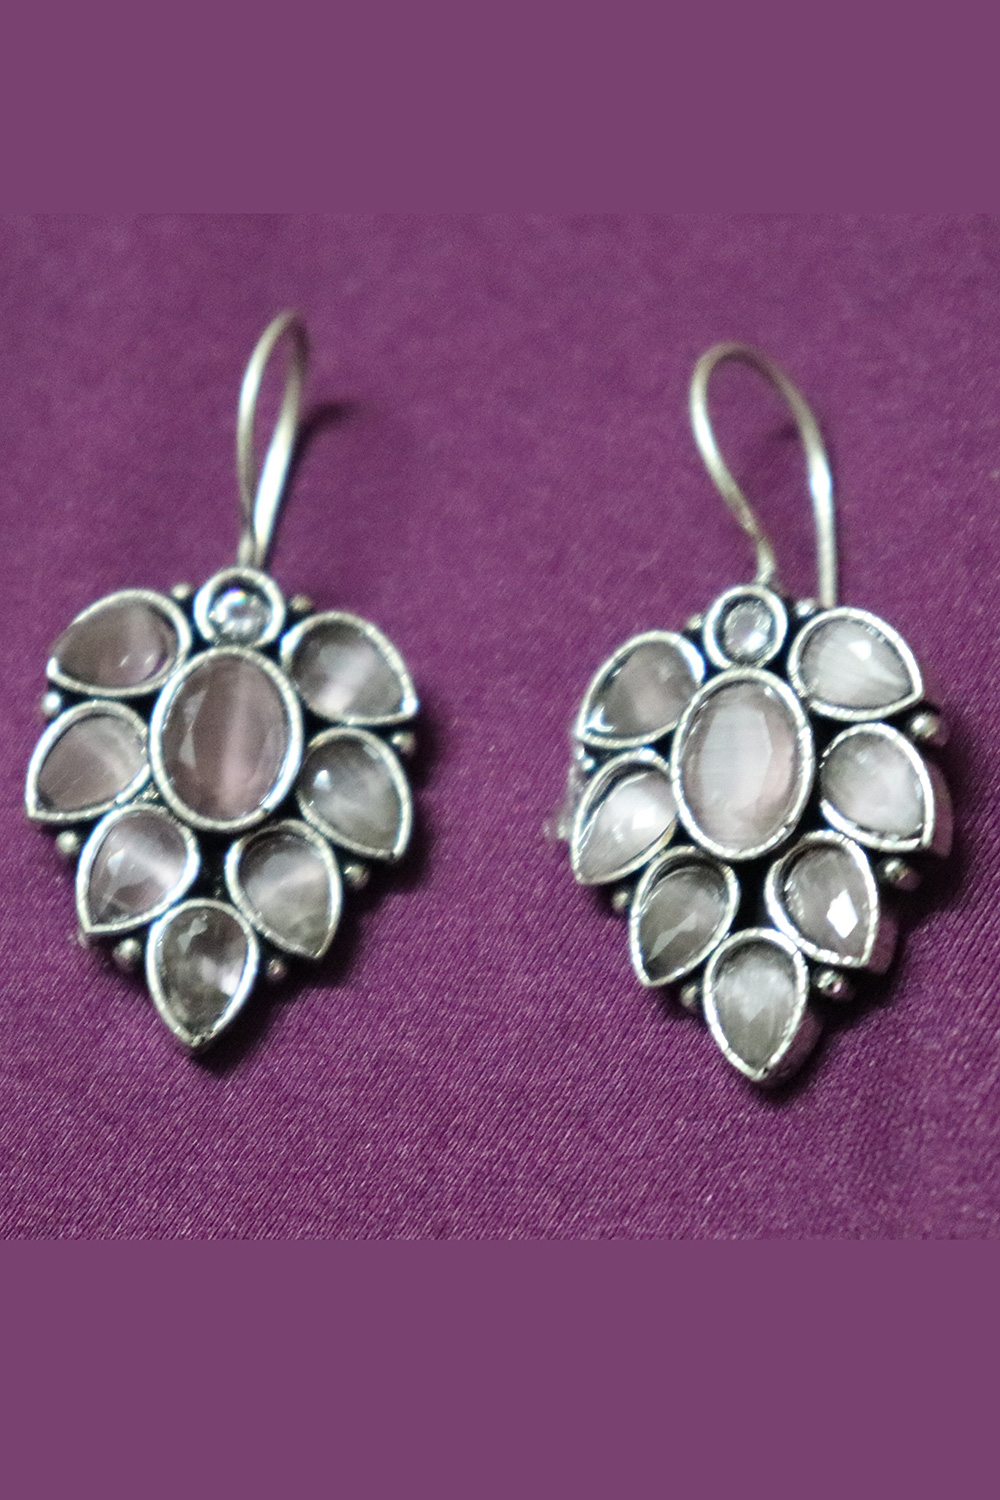 Buy Larimar Gemstone Earrings Boho Earrings 925 Silver Earrings Online in  India - Etsy | Silver earrings etsy, Boho earrings, Gemstone earrings